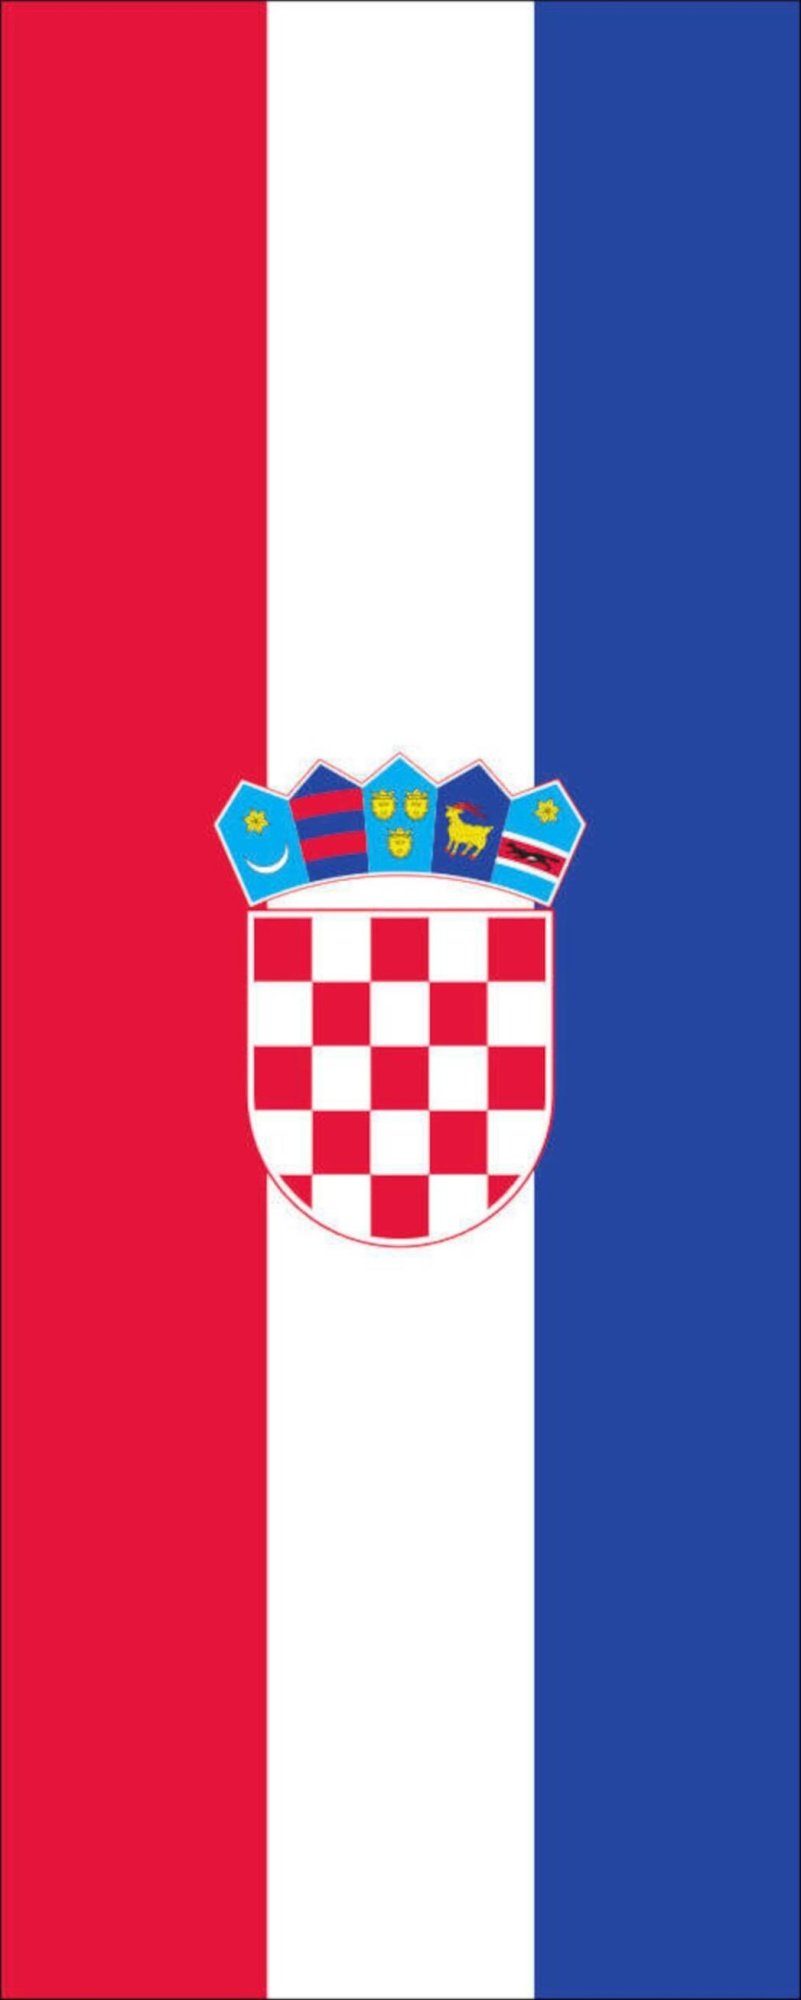 Kroatien 110 flaggenmeer Flagge Hochformat Flagge g/m²